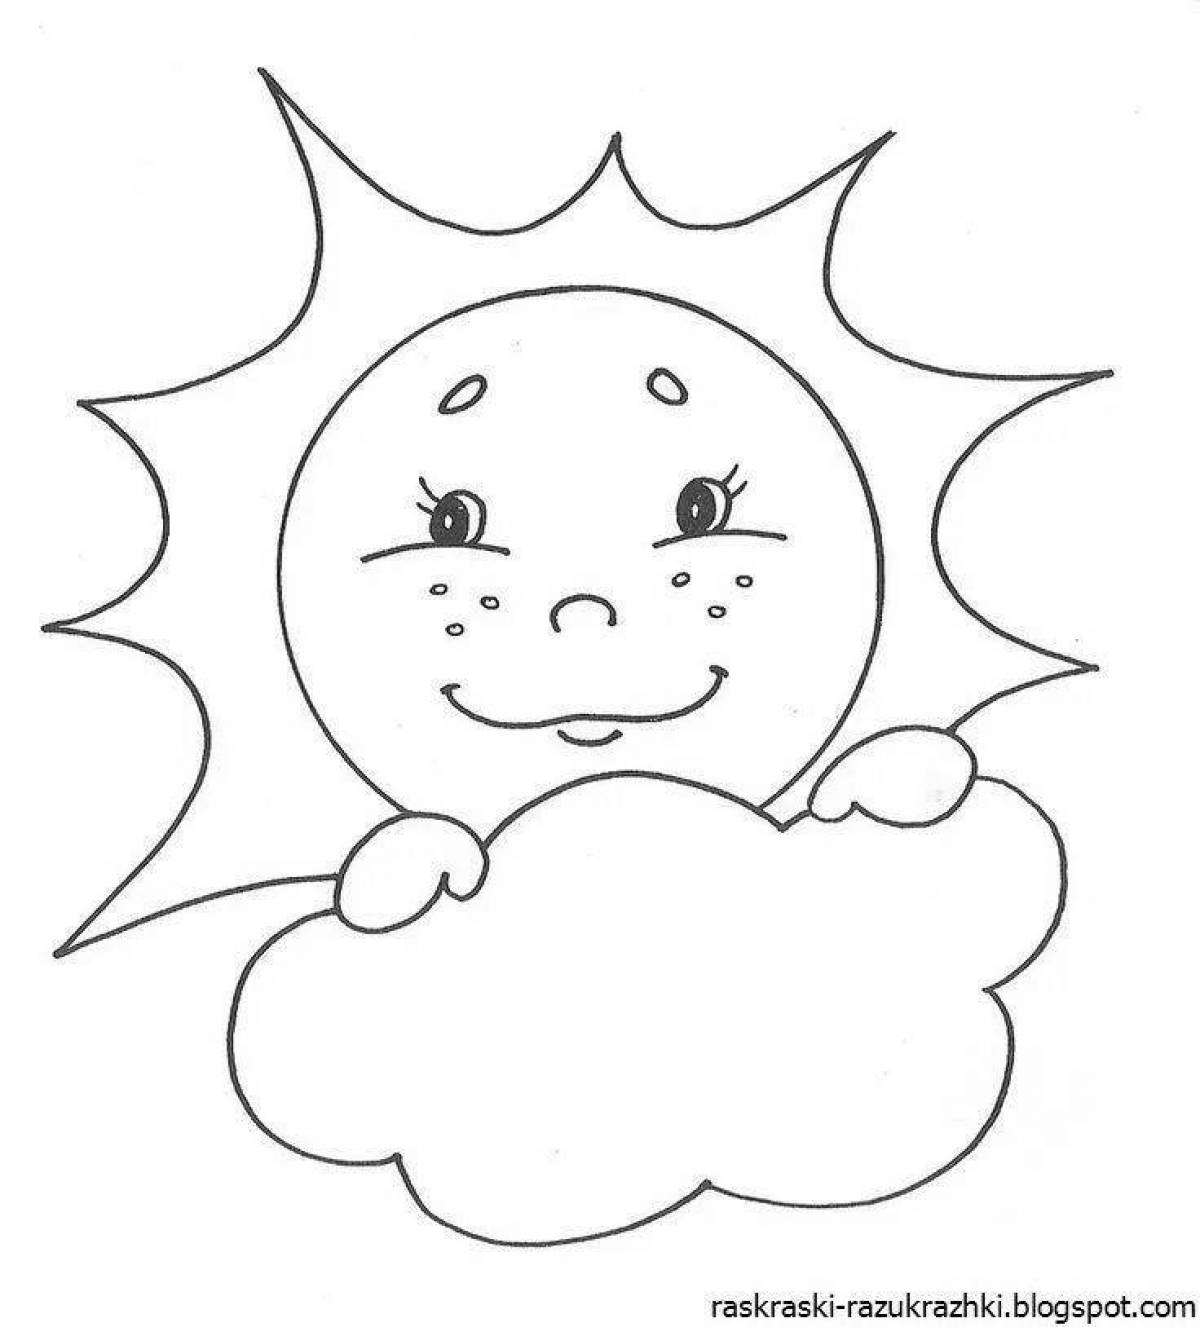 Игривая раскраска солнце для детей 2-3 лет